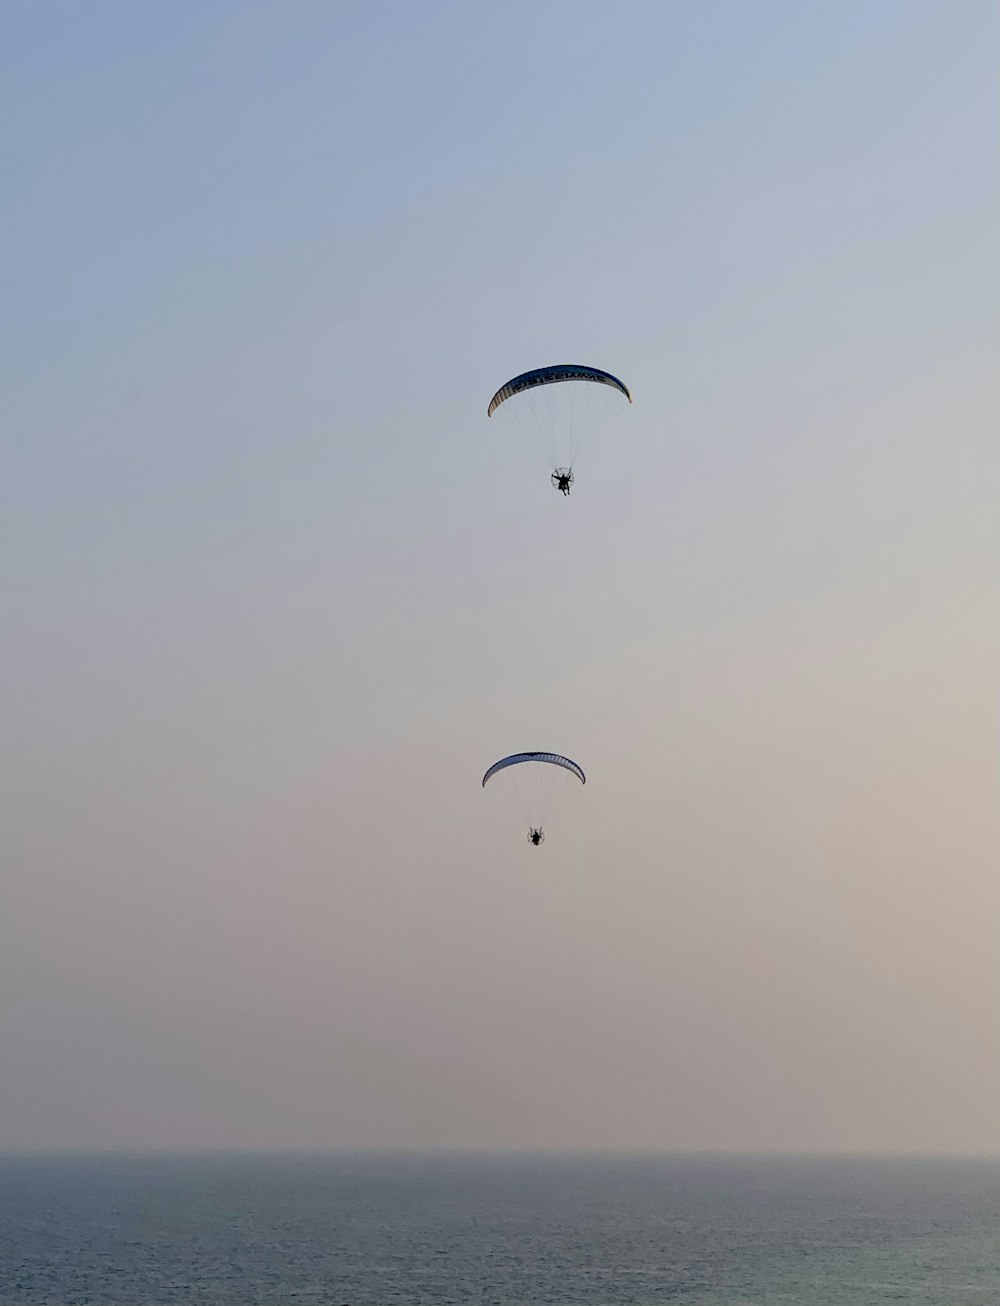 Un couple de parachutes ascensionnels survole l’océan